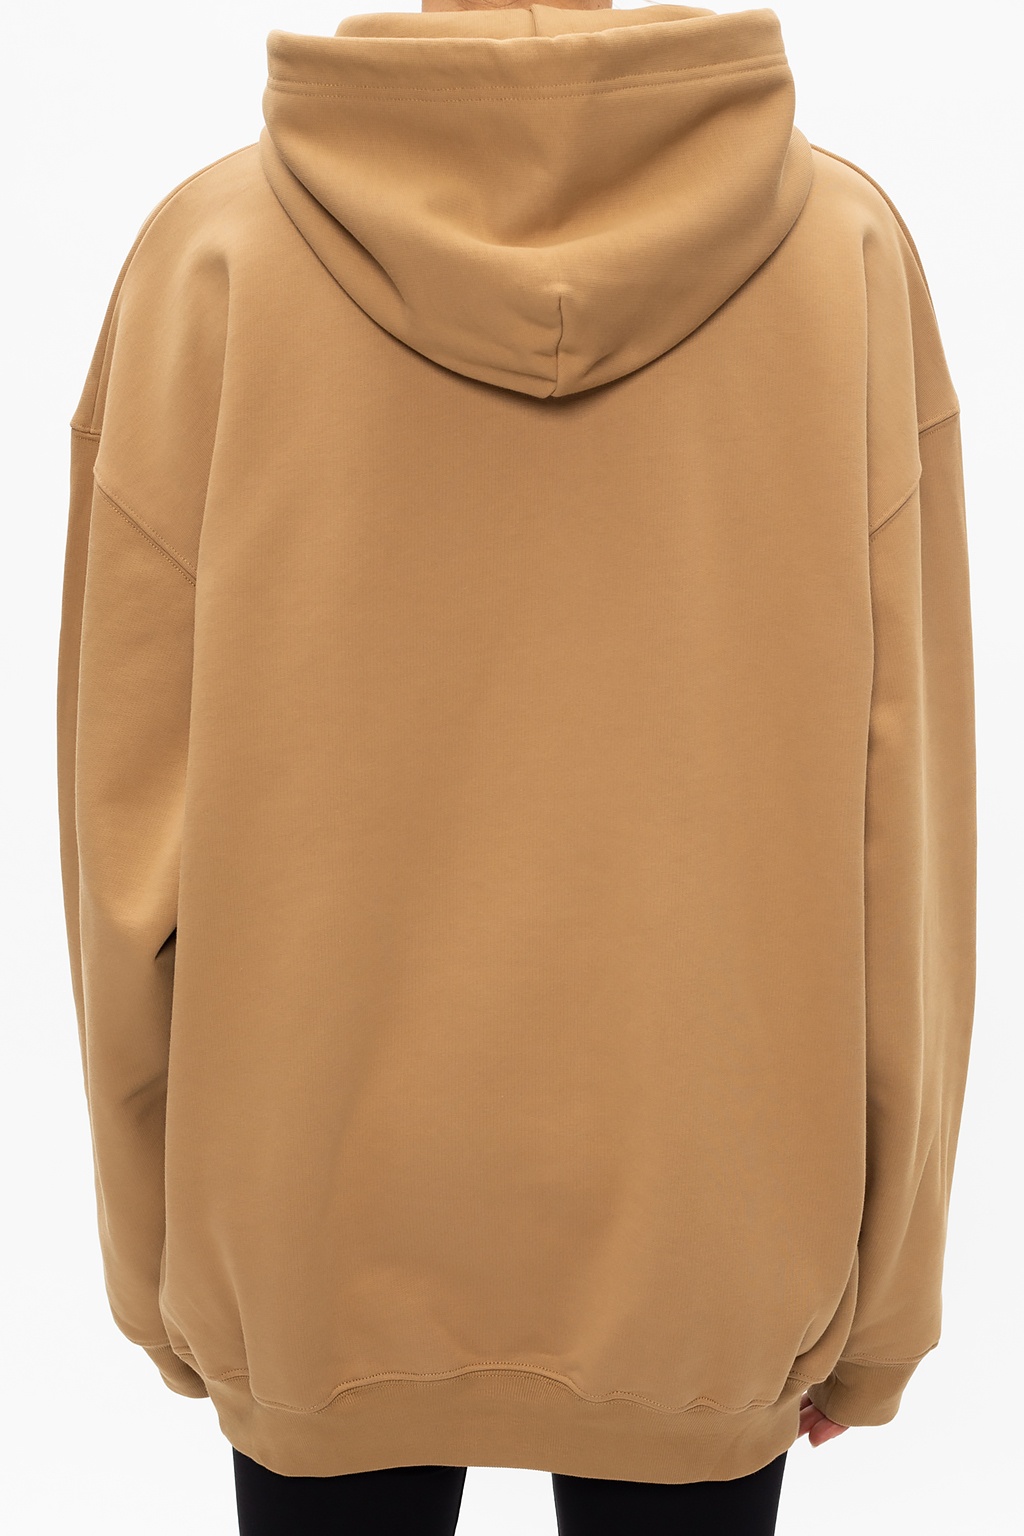 balenciaga hoodie womens brown